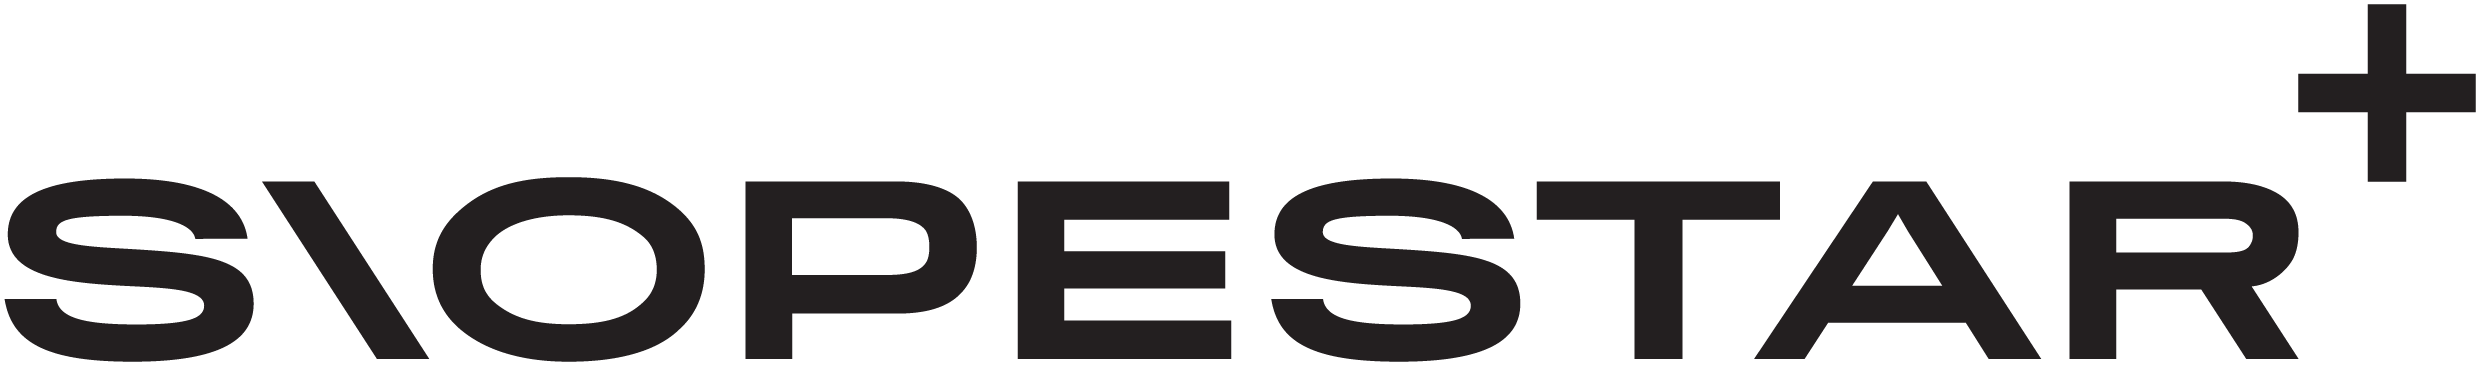 Logo: Slopestar